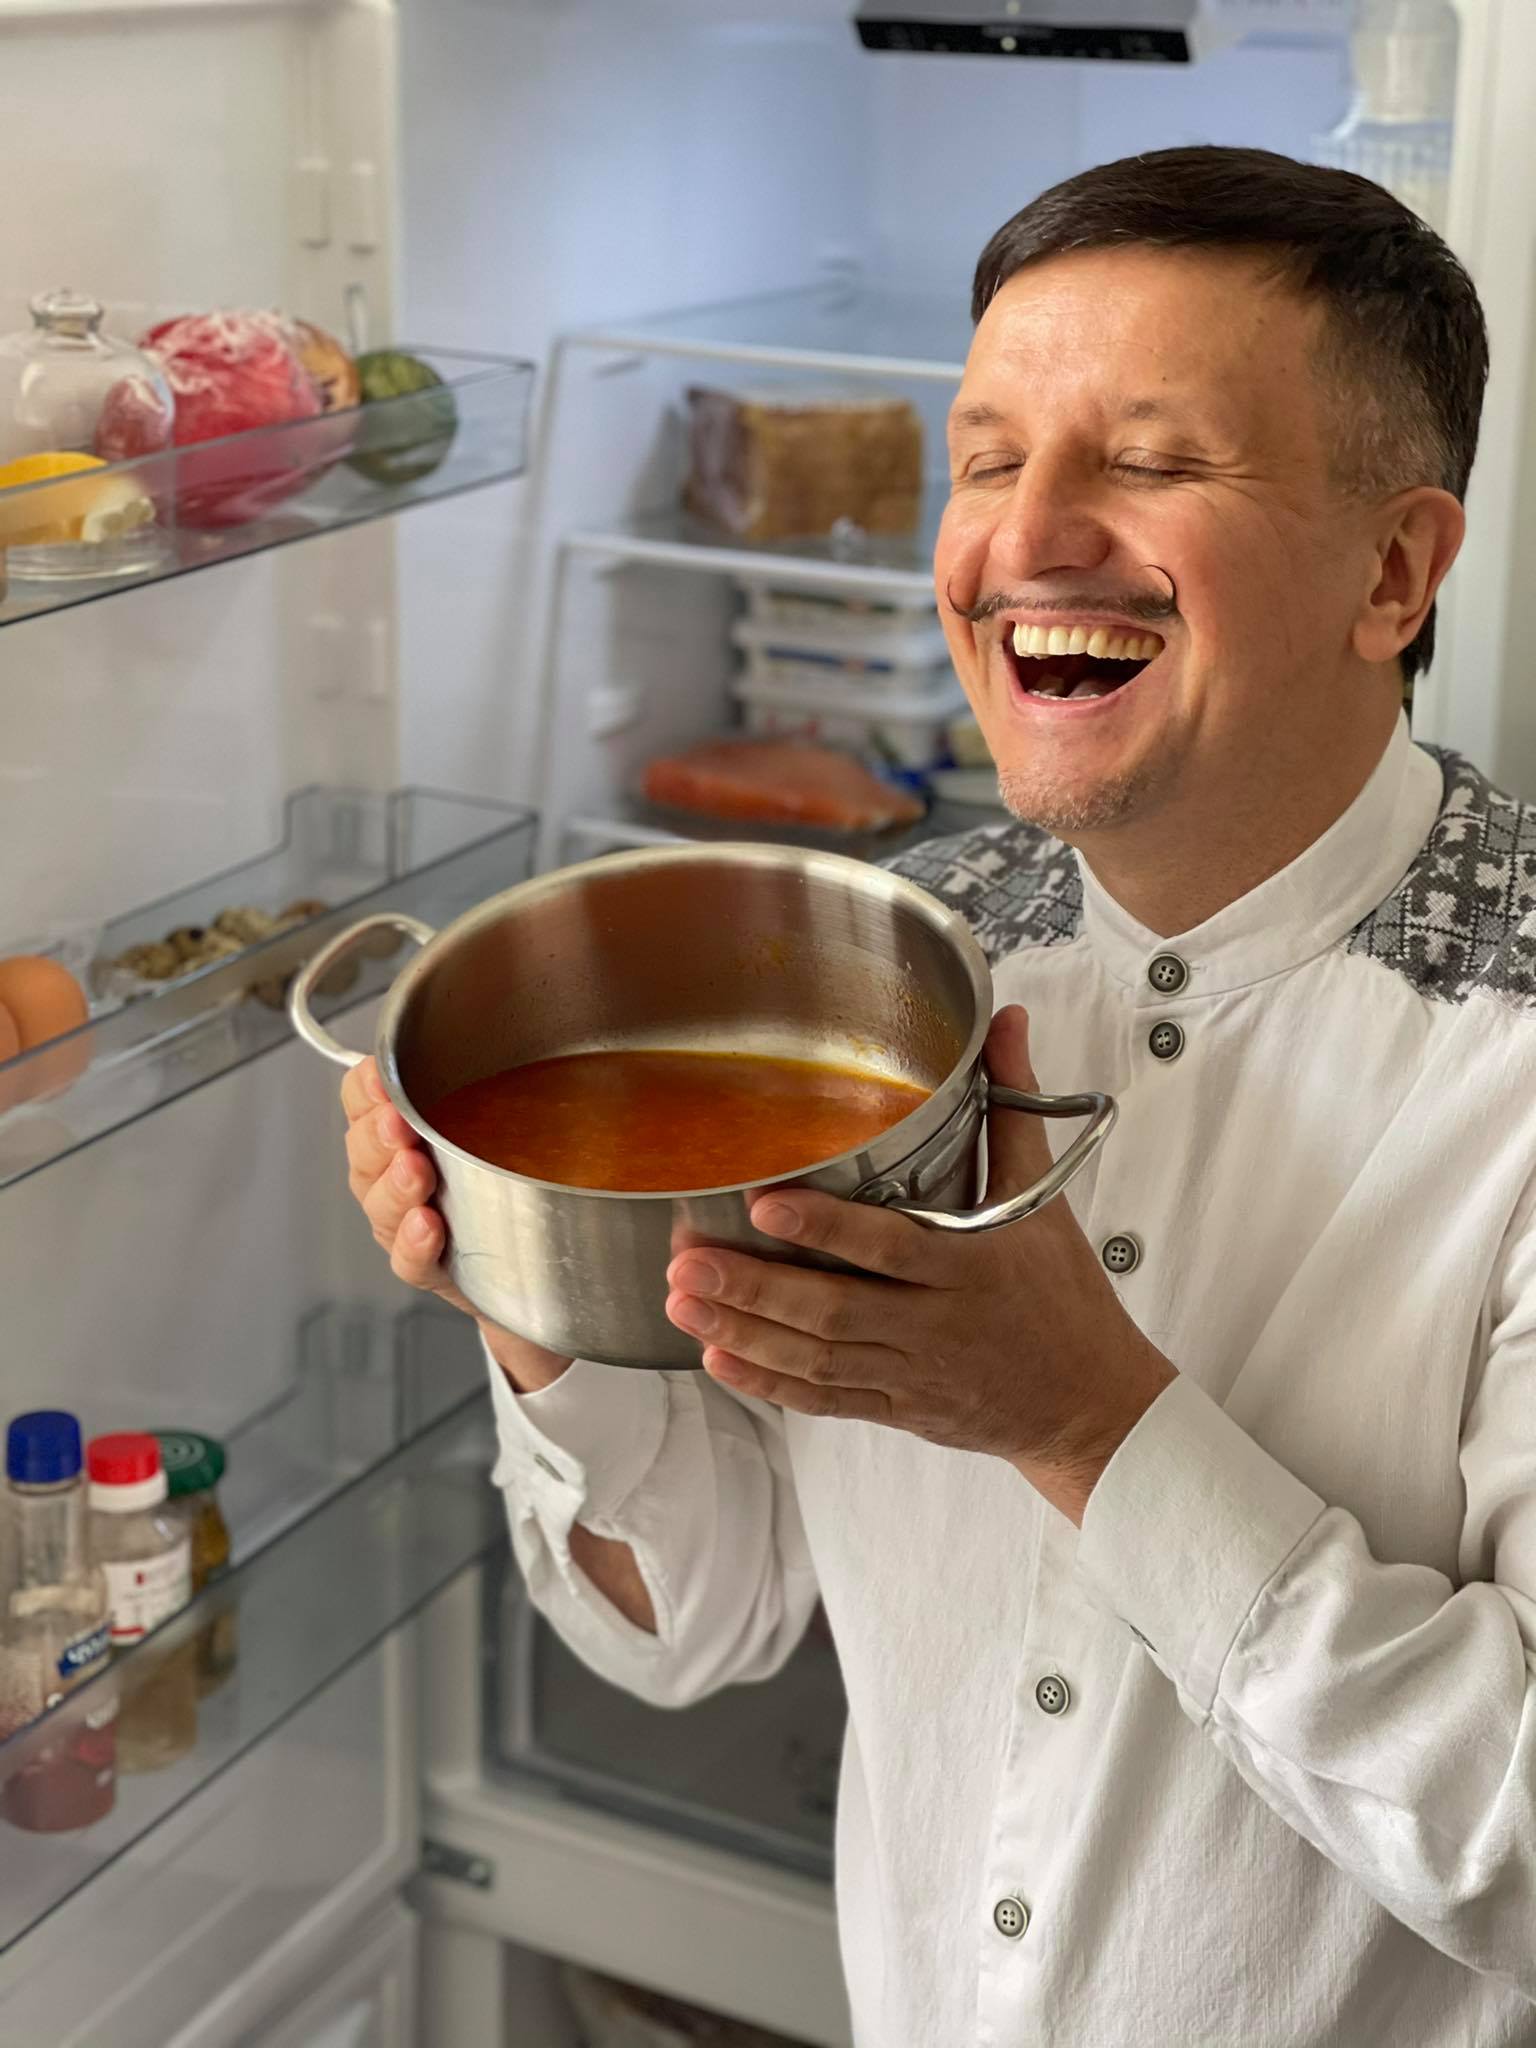 Що в холодильнику Олександра Котолупа, чия компанія Figaro годує Український дім в Давосі